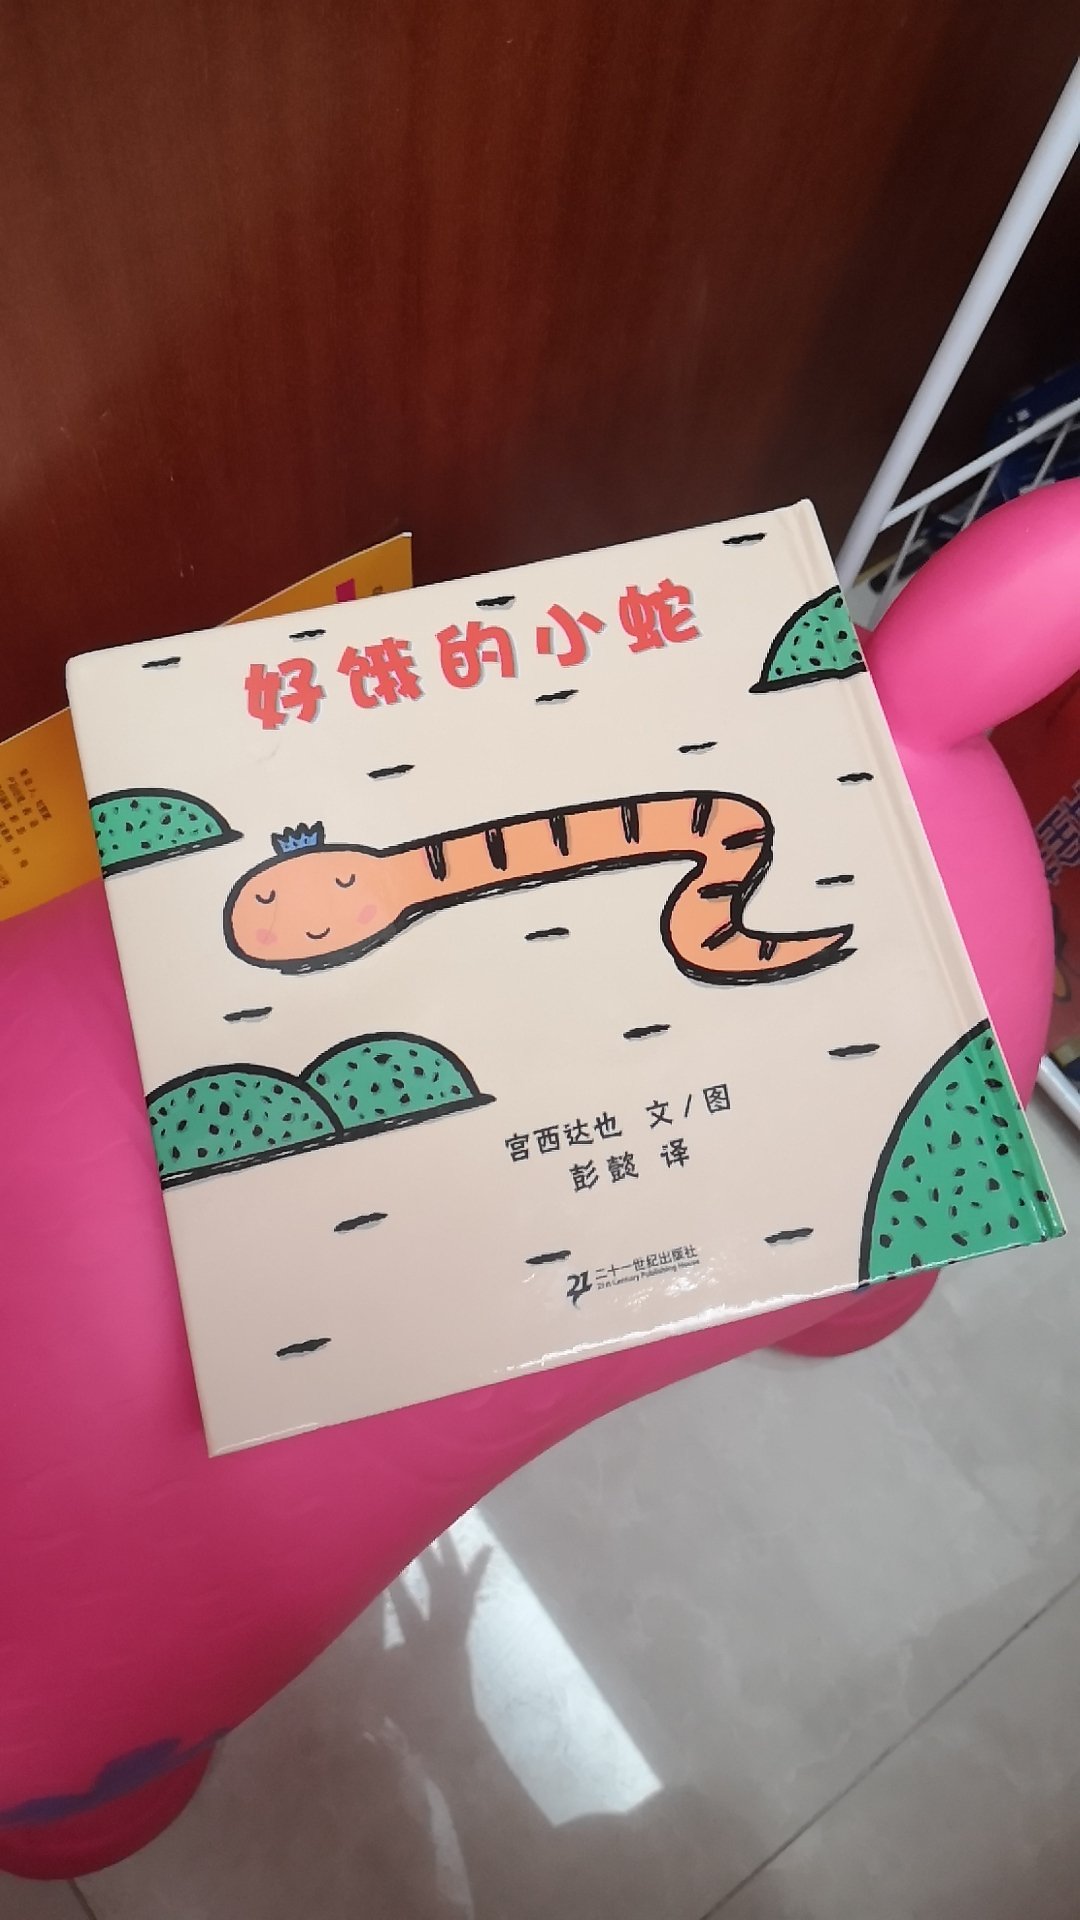 这本书孩子特别喜欢，每次问她好饿的小蛇看到啥吃的会怎么样，都会张大嘴巴啊呜啊呜